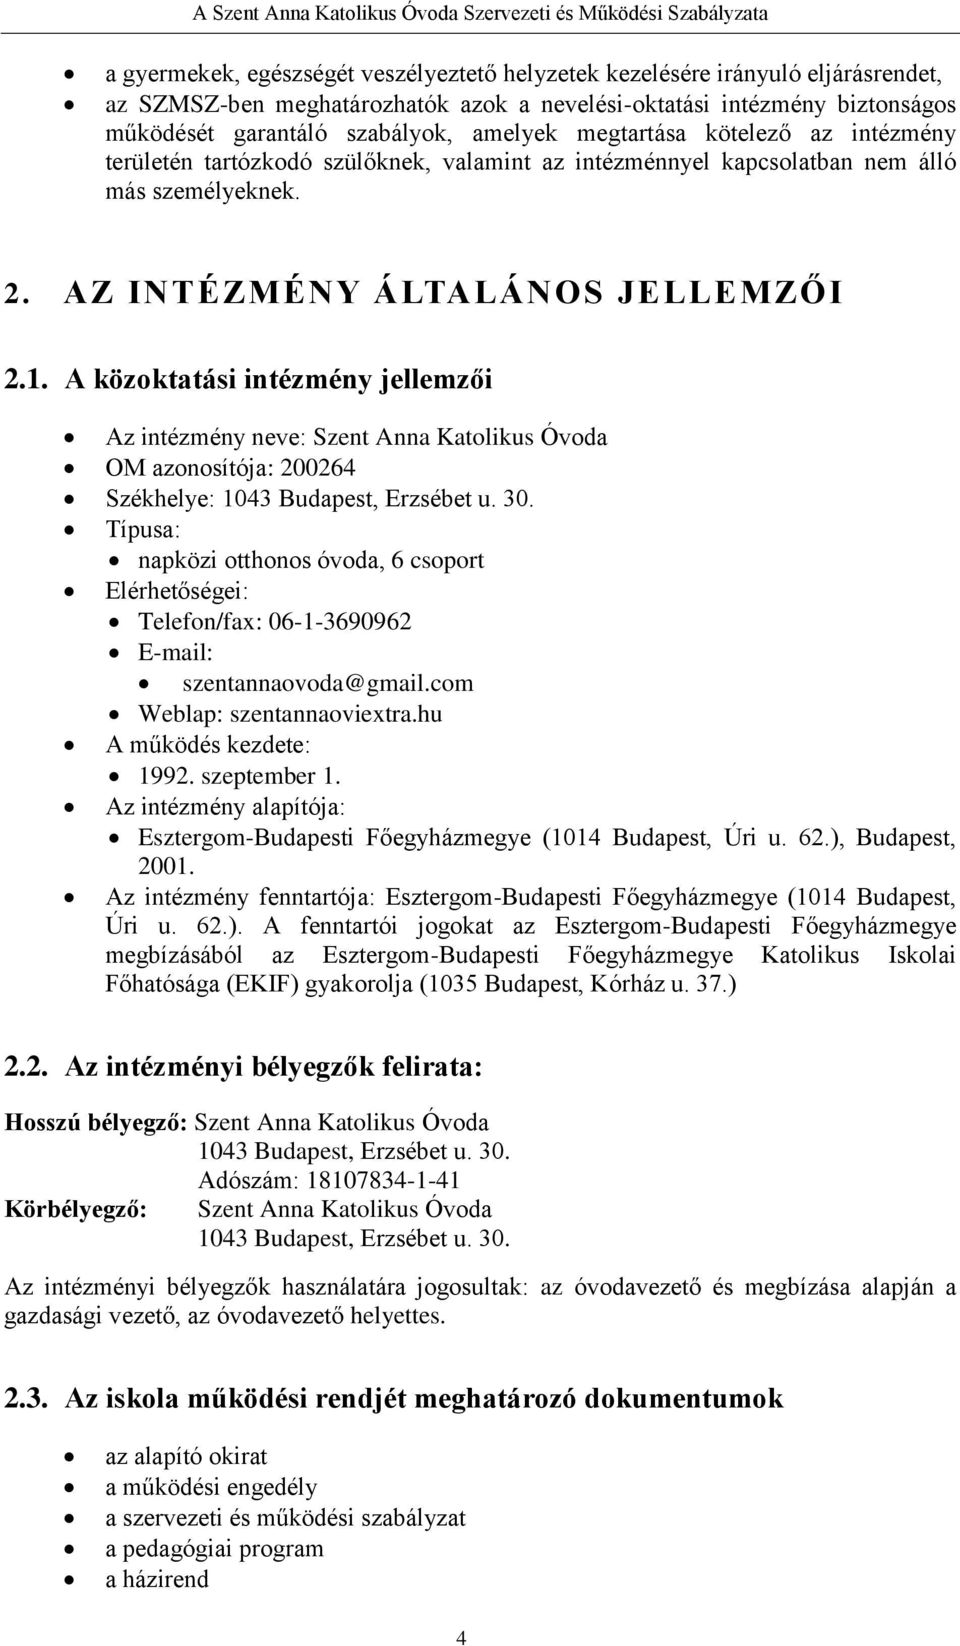 A közoktatási intézmény jellemzői Az intézmény neve: Szent Anna Katolikus Óvoda OM azonosítója: 200264 Székhelye: 1043 Budapest, Erzsébet u. 30.